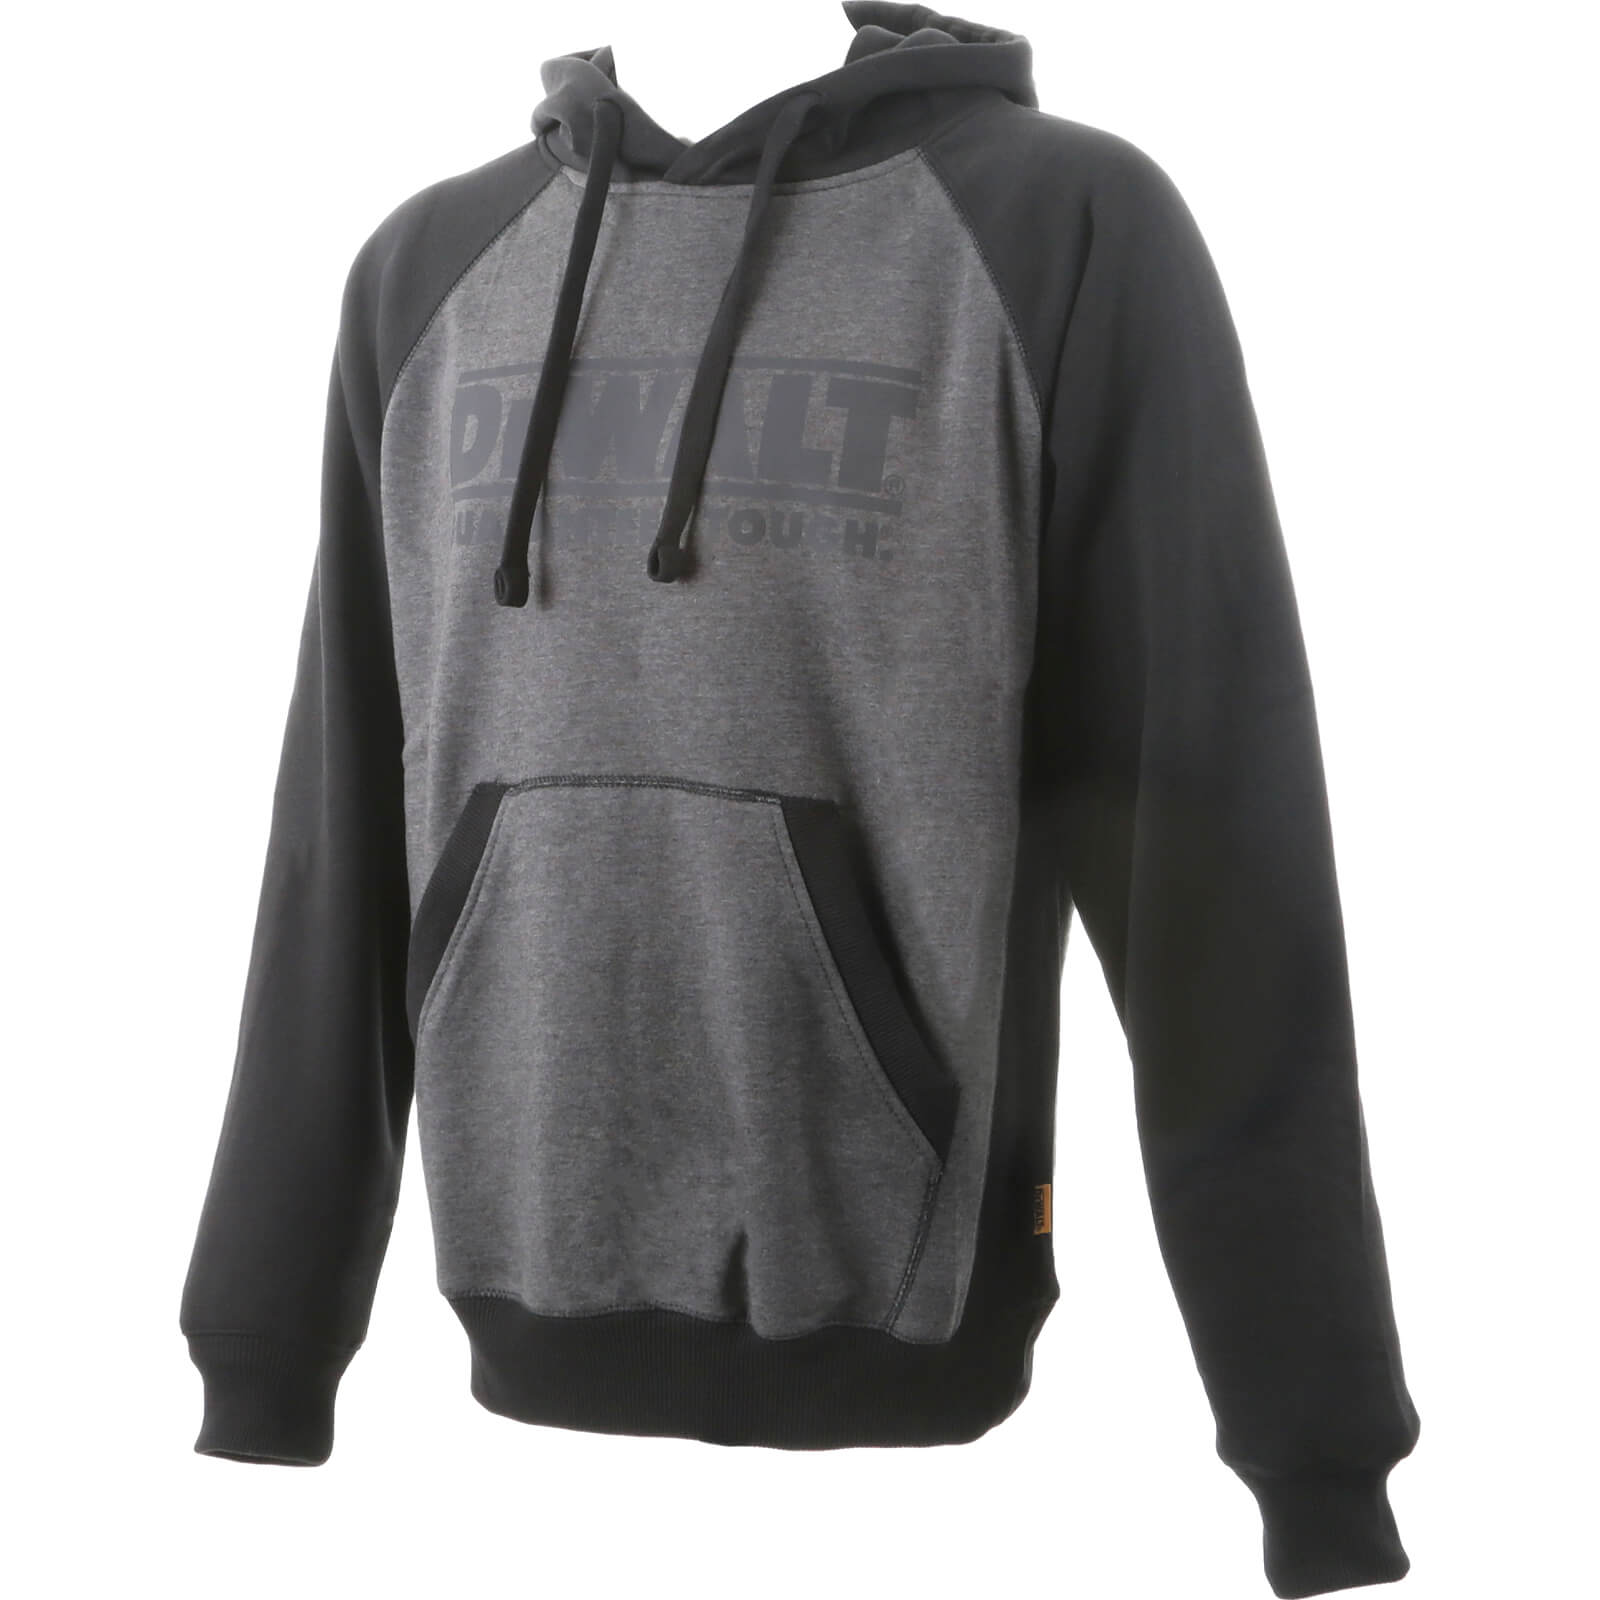 DeWalt Stratford Hoodie Sweatshirt Black / Grey M